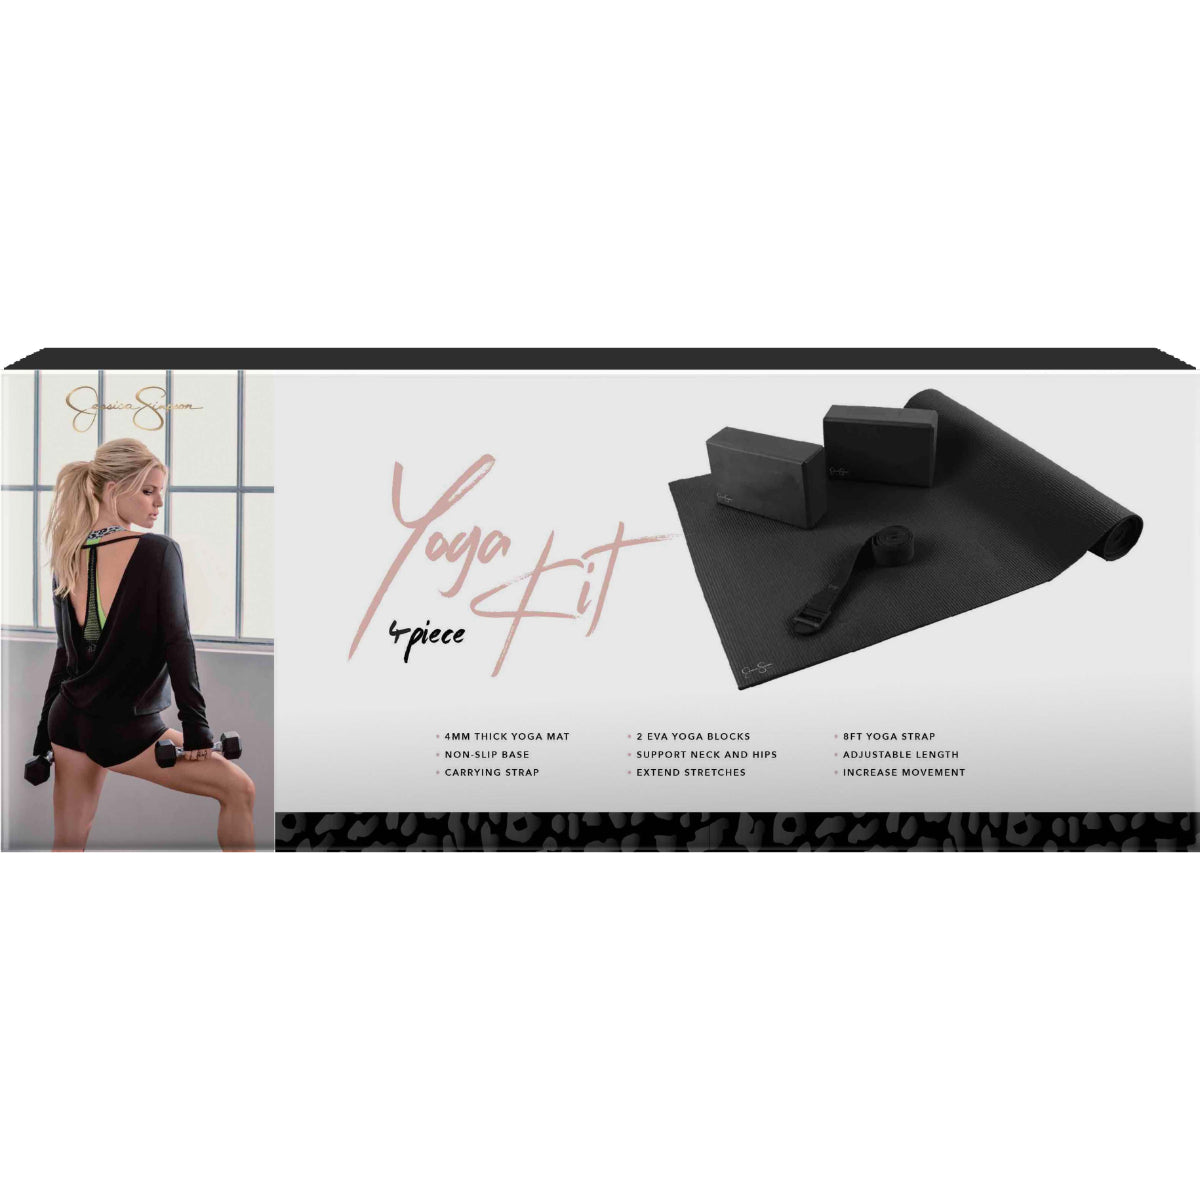 Yoga Basics Starter Kit - Complete Health & Fitness Set for Beginners - Non  Slip Black Mat, 4